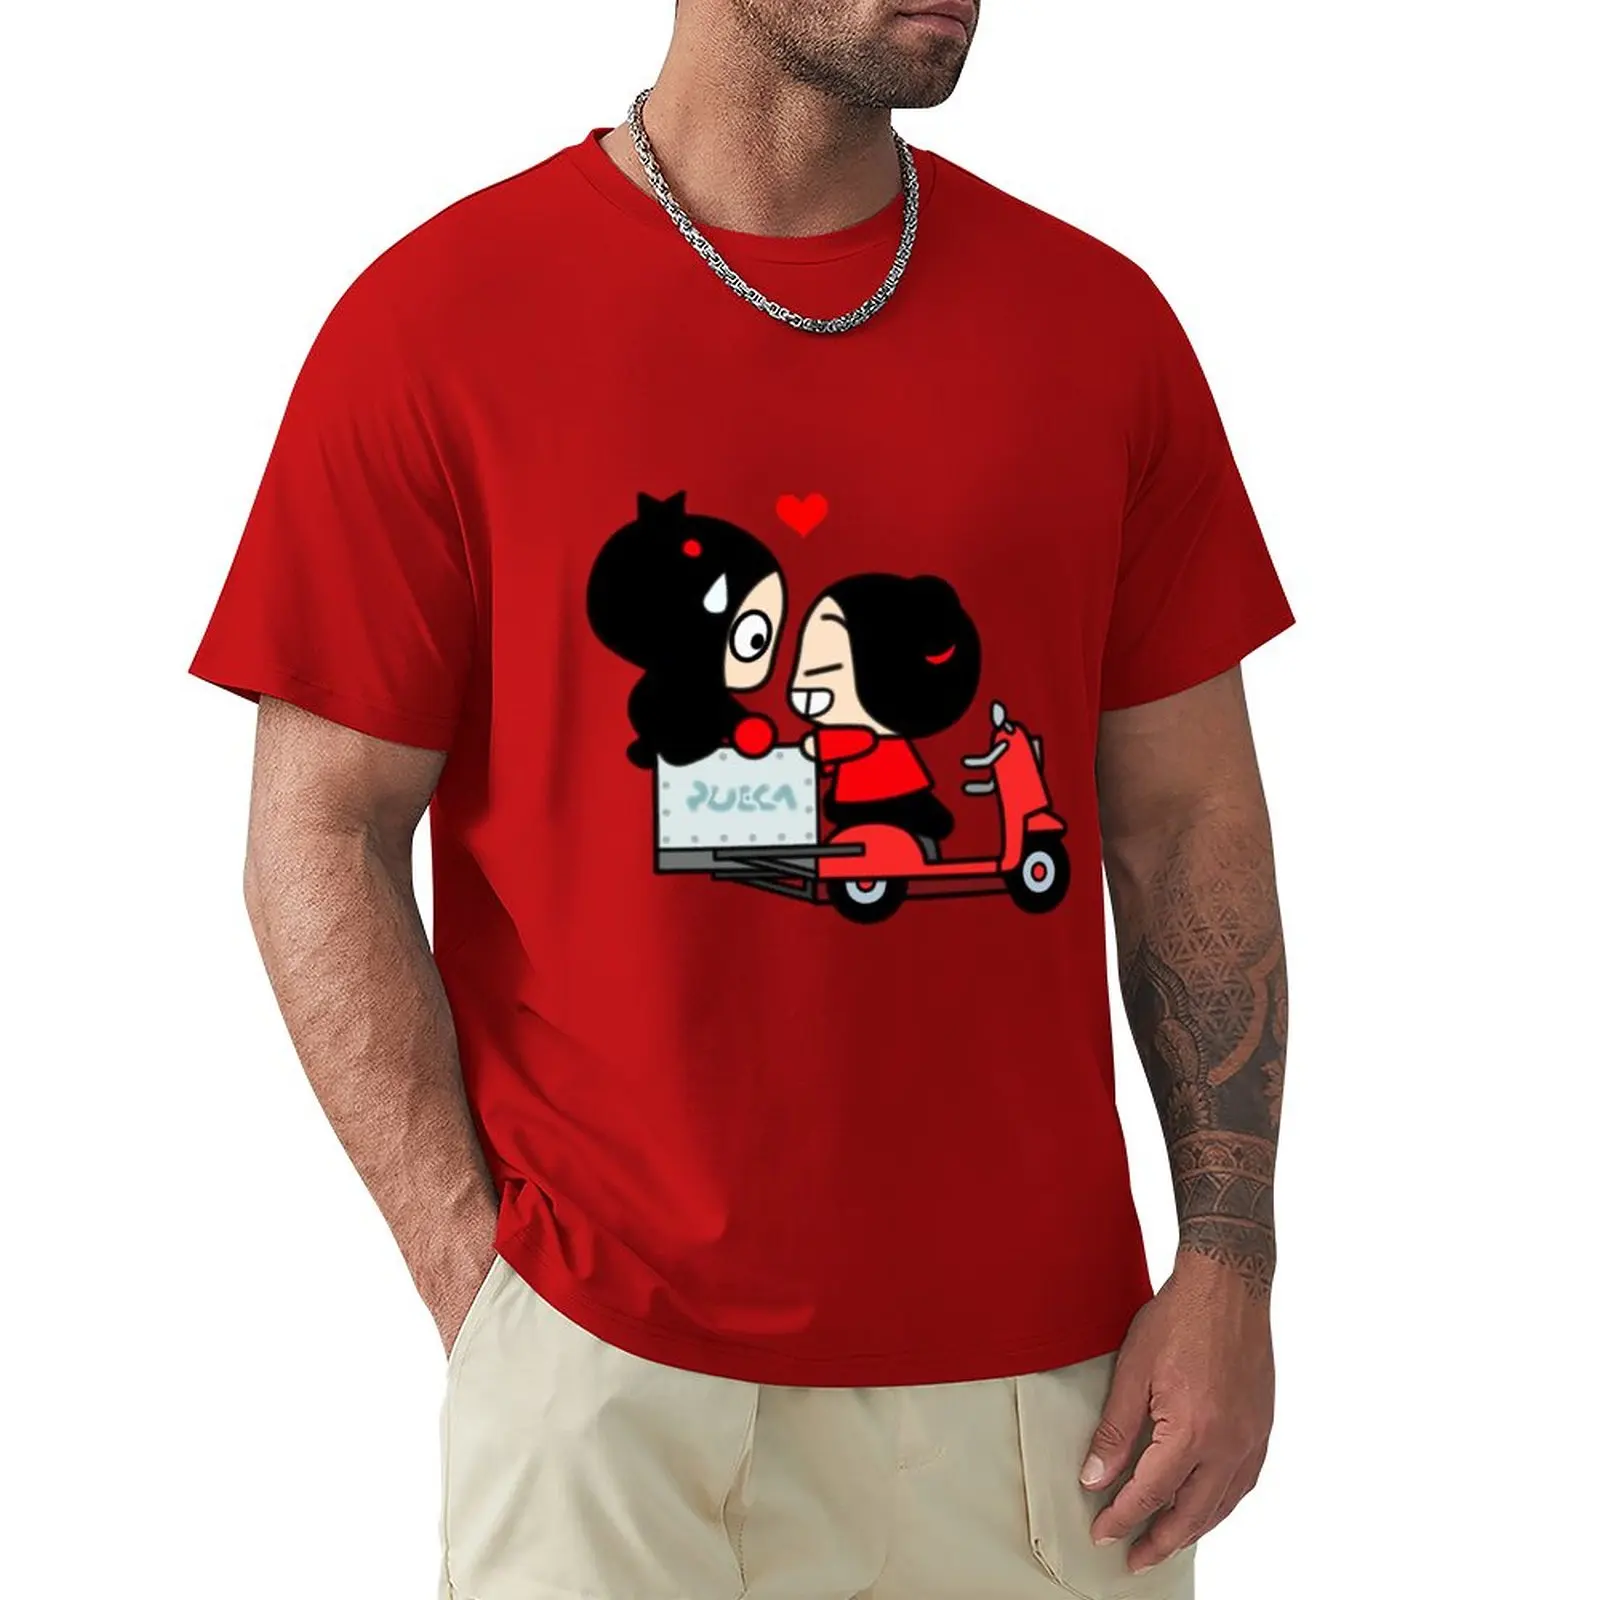 Футболка Pucca X Garu (Scooter), футболки для любителей спорта, черные футболки, эстетическая одежда, белые футболки для мальчиков, мужские винтажные футболки